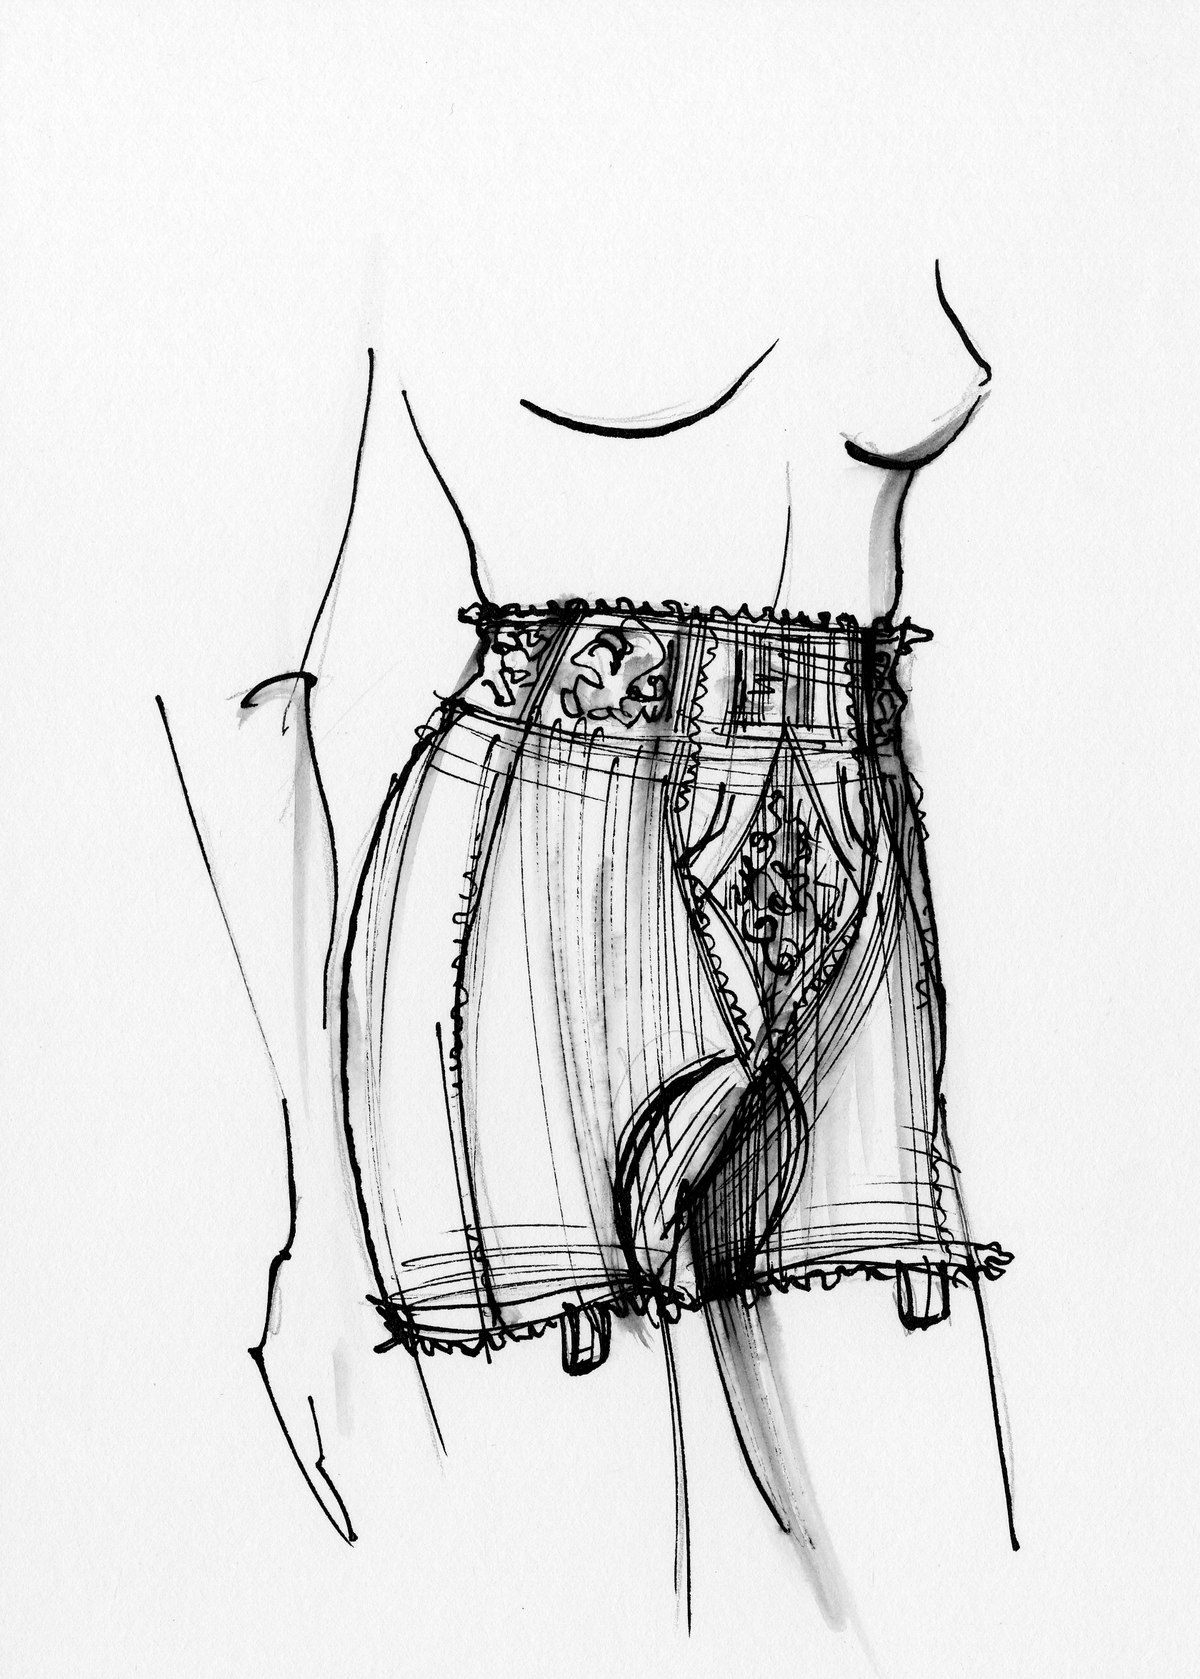 panty girdle - Wikidata